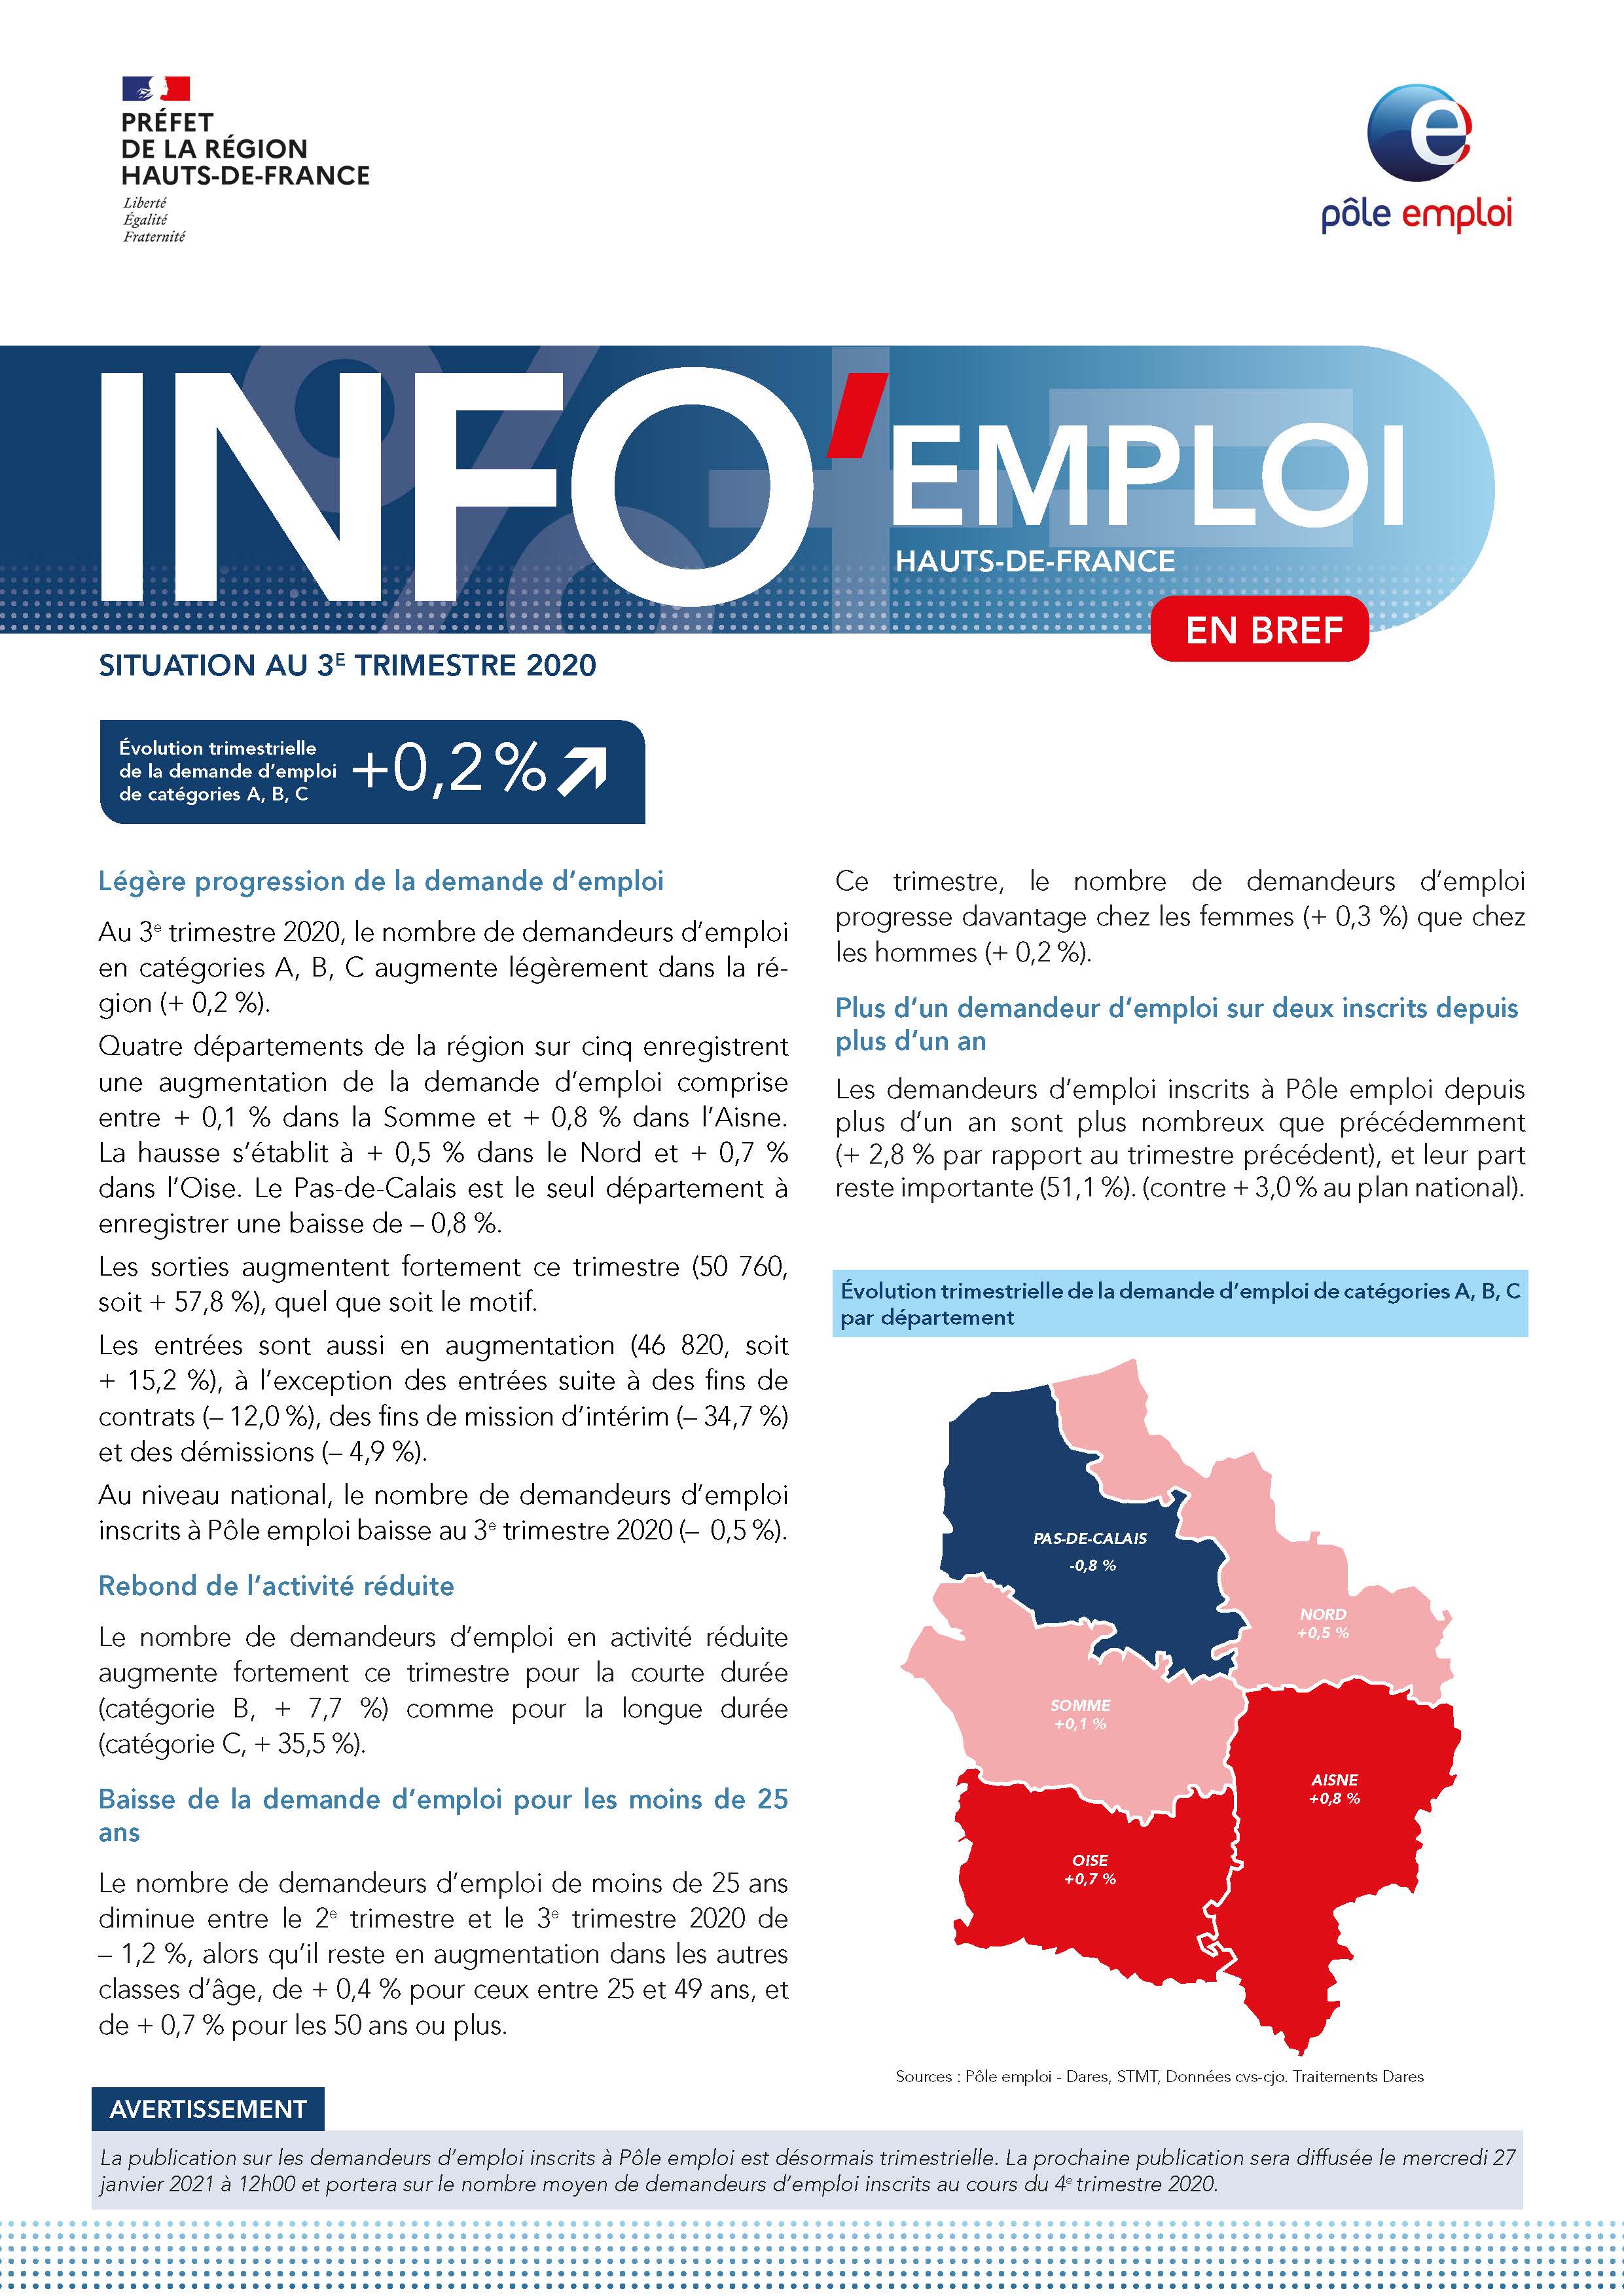 INFO emploi en bref - situation au cours du 3e trimestre 2020 en Hauts-de-France